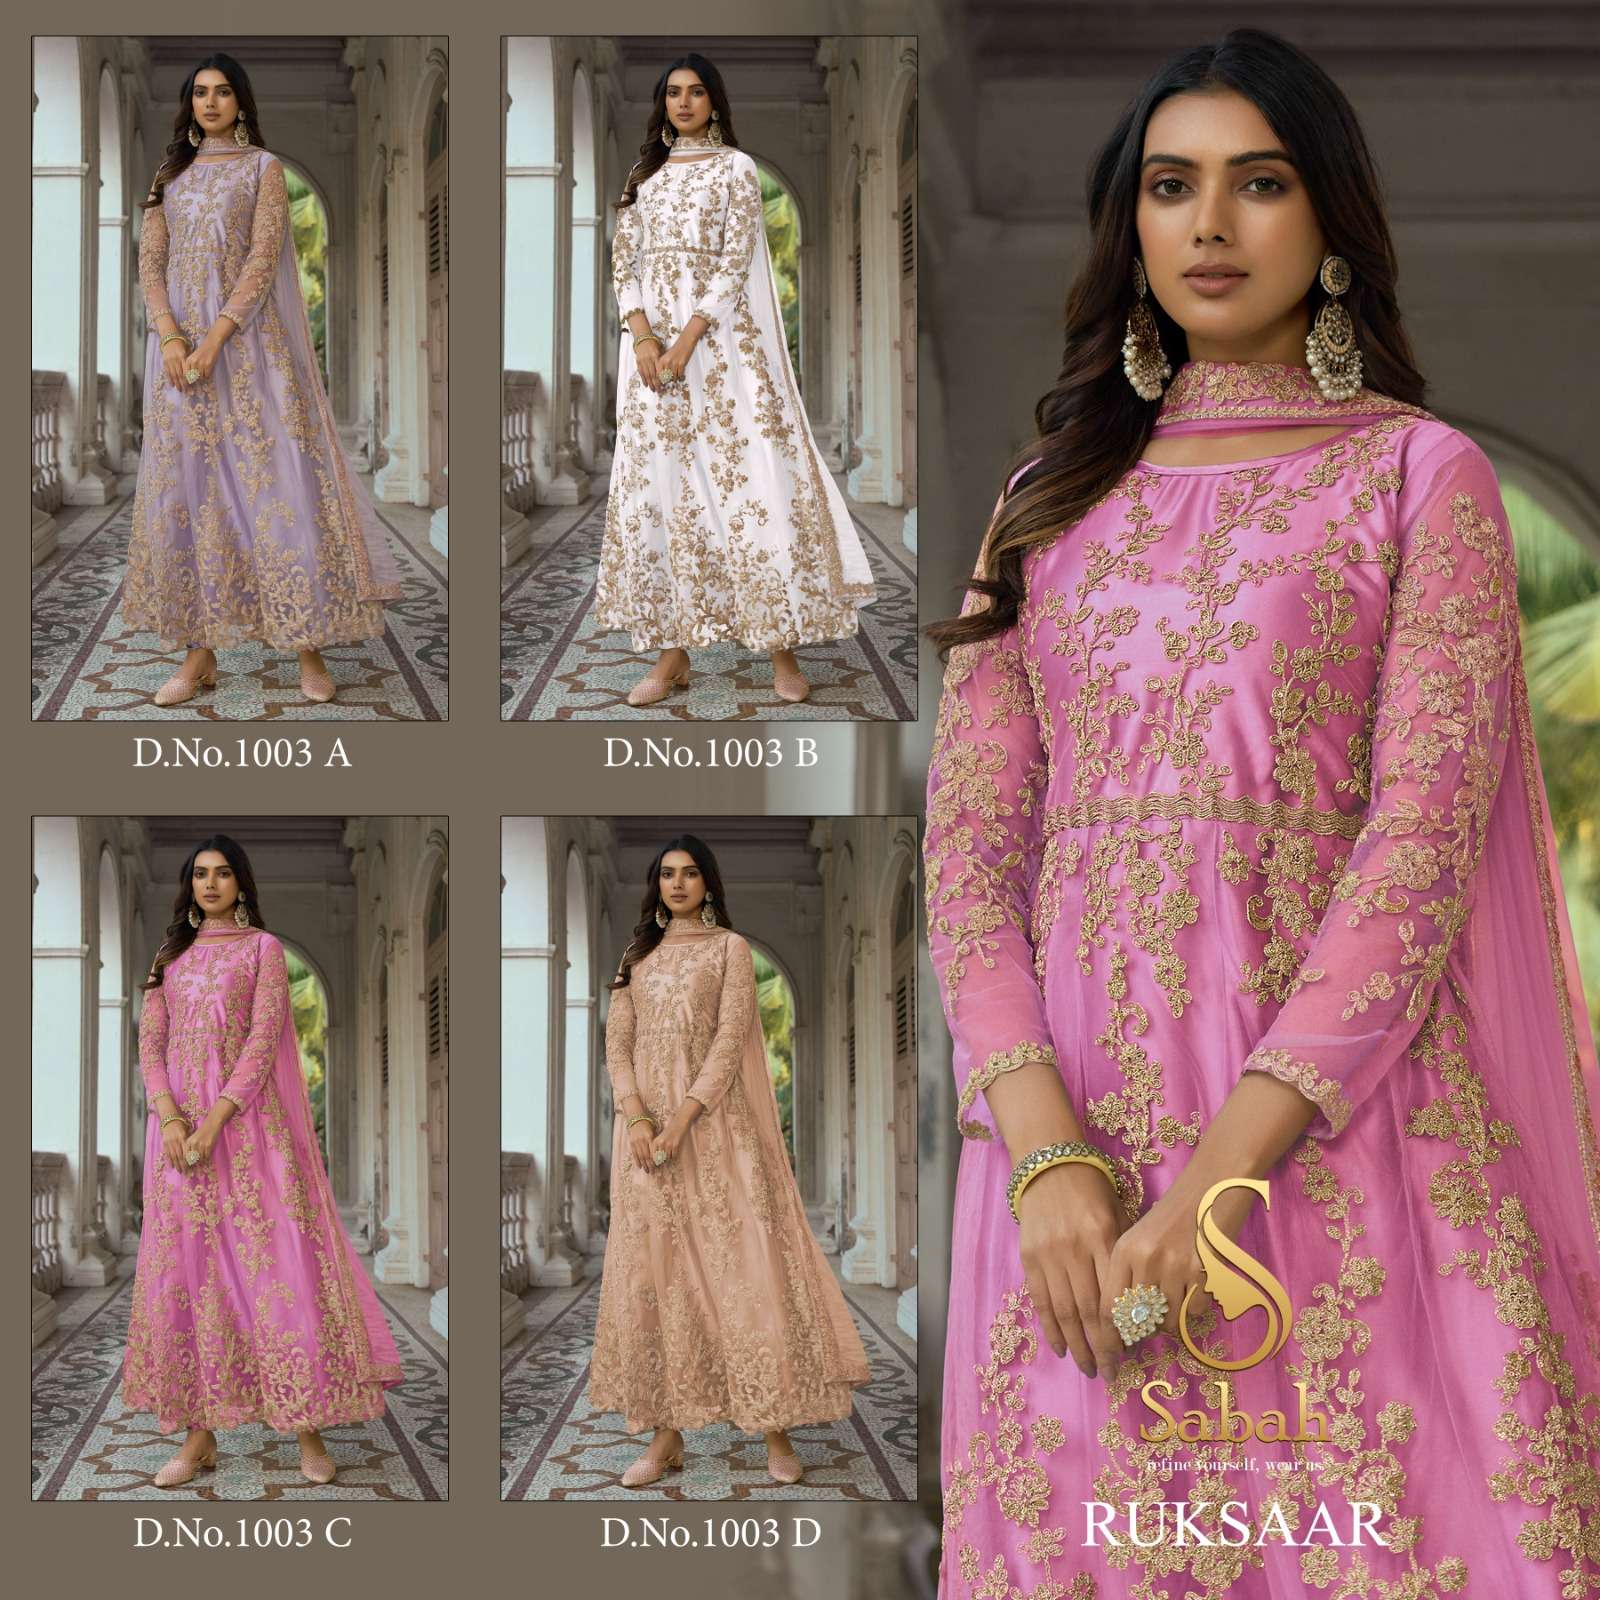 sabah ruksaar 1003 series exclusive designer salwar kameez collection online supplier surat